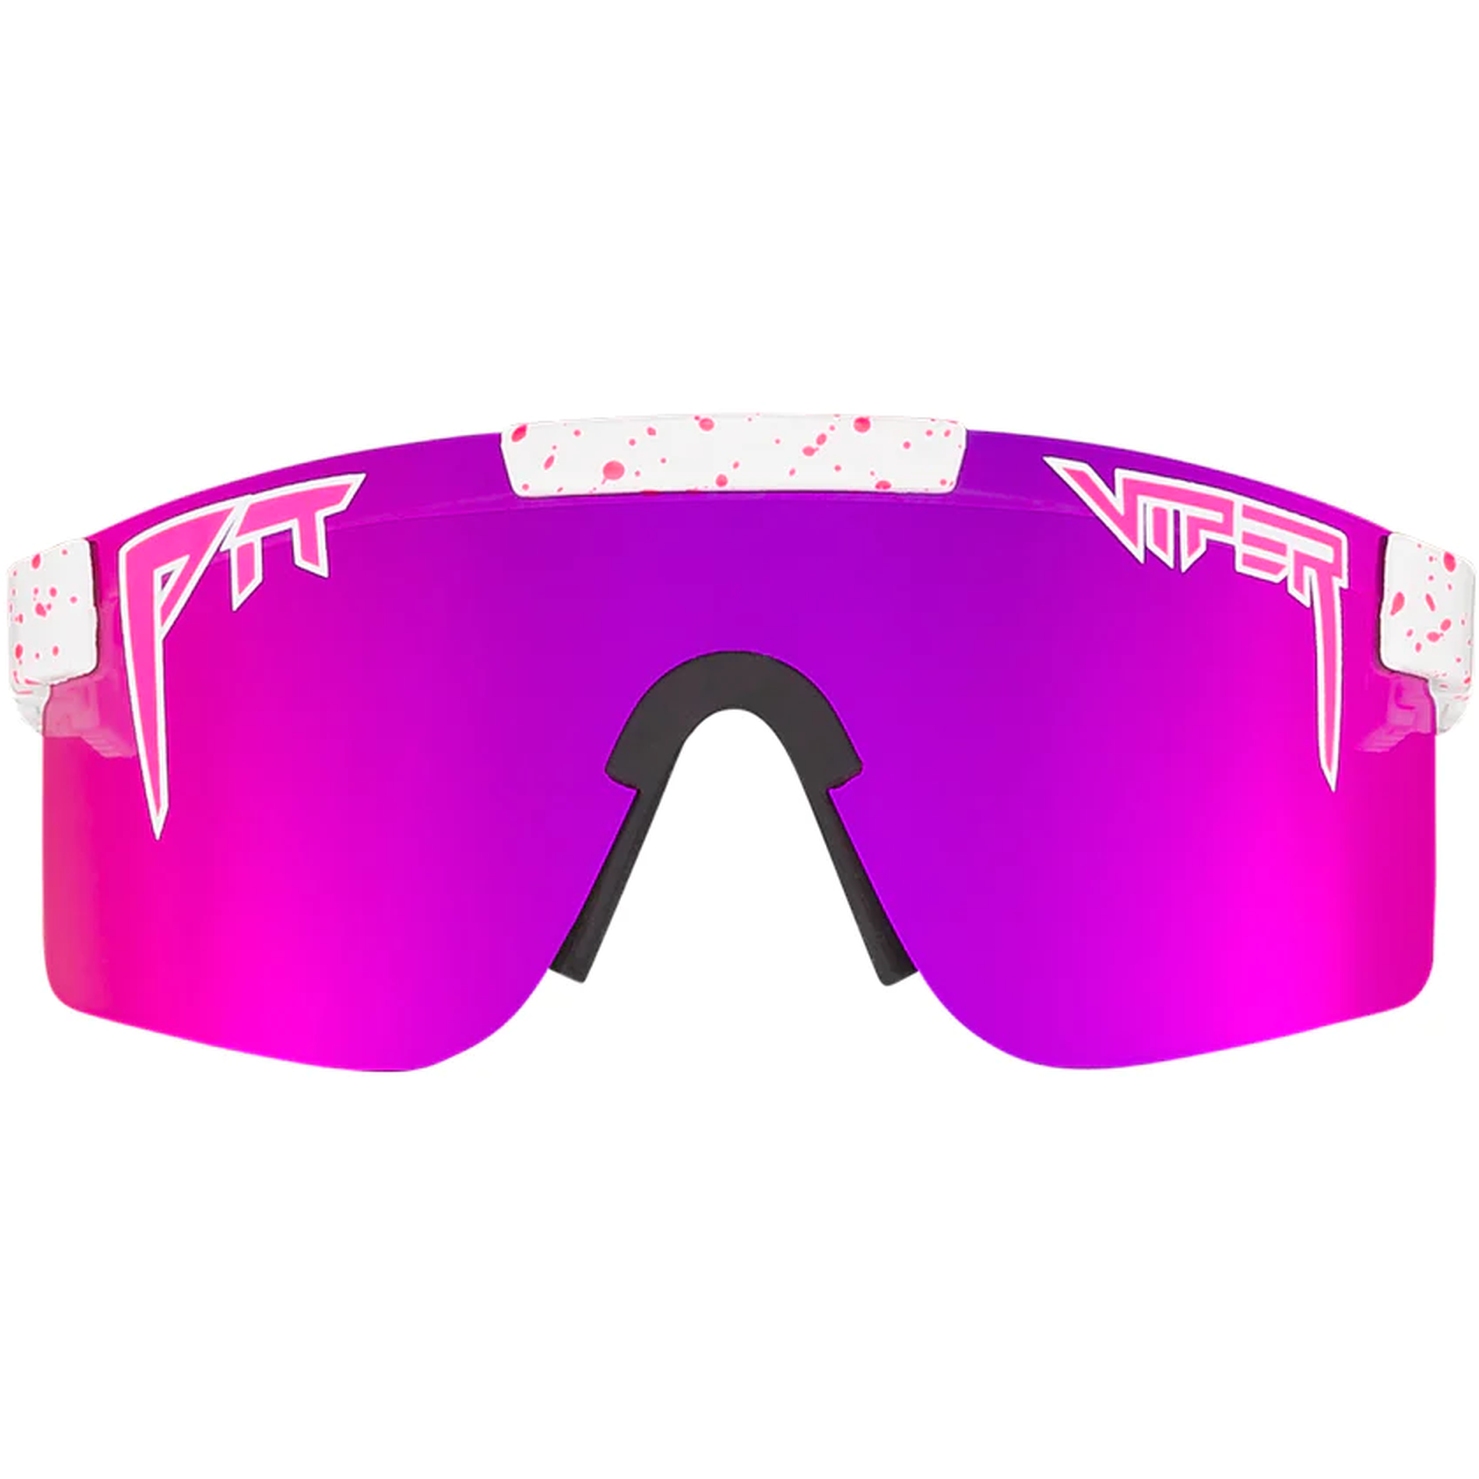 Productfoto van Pit Viper The Originals Bril - Single Wide - The LA Brights / Polarized Pink Revo Mirror